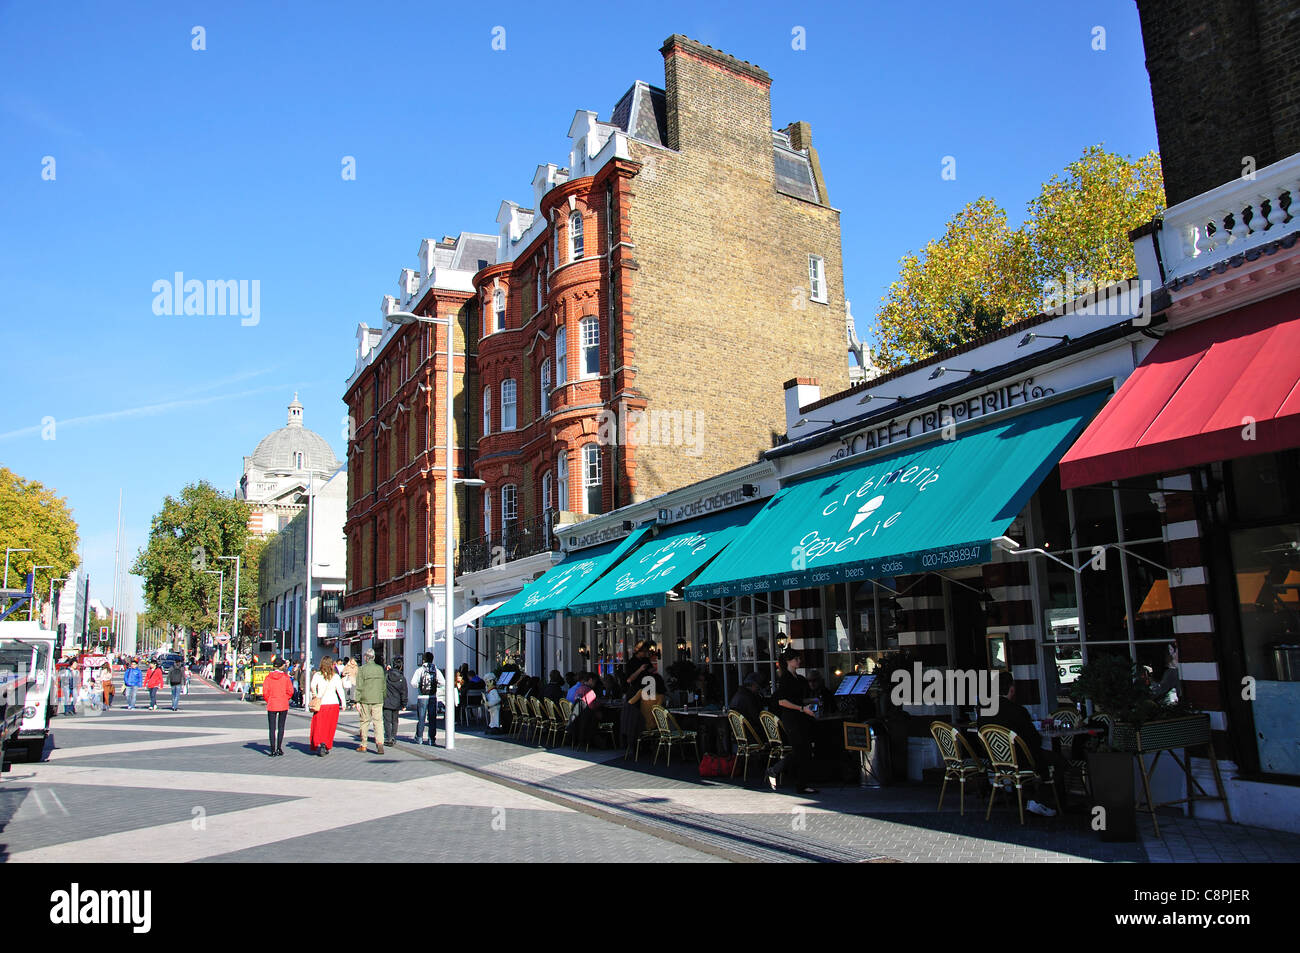 Café Cremerie, Exhibition Road, Kensington, quartier royal de Kensington et Chelsea, Greater London, Angleterre, Royaume-Uni Banque D'Images